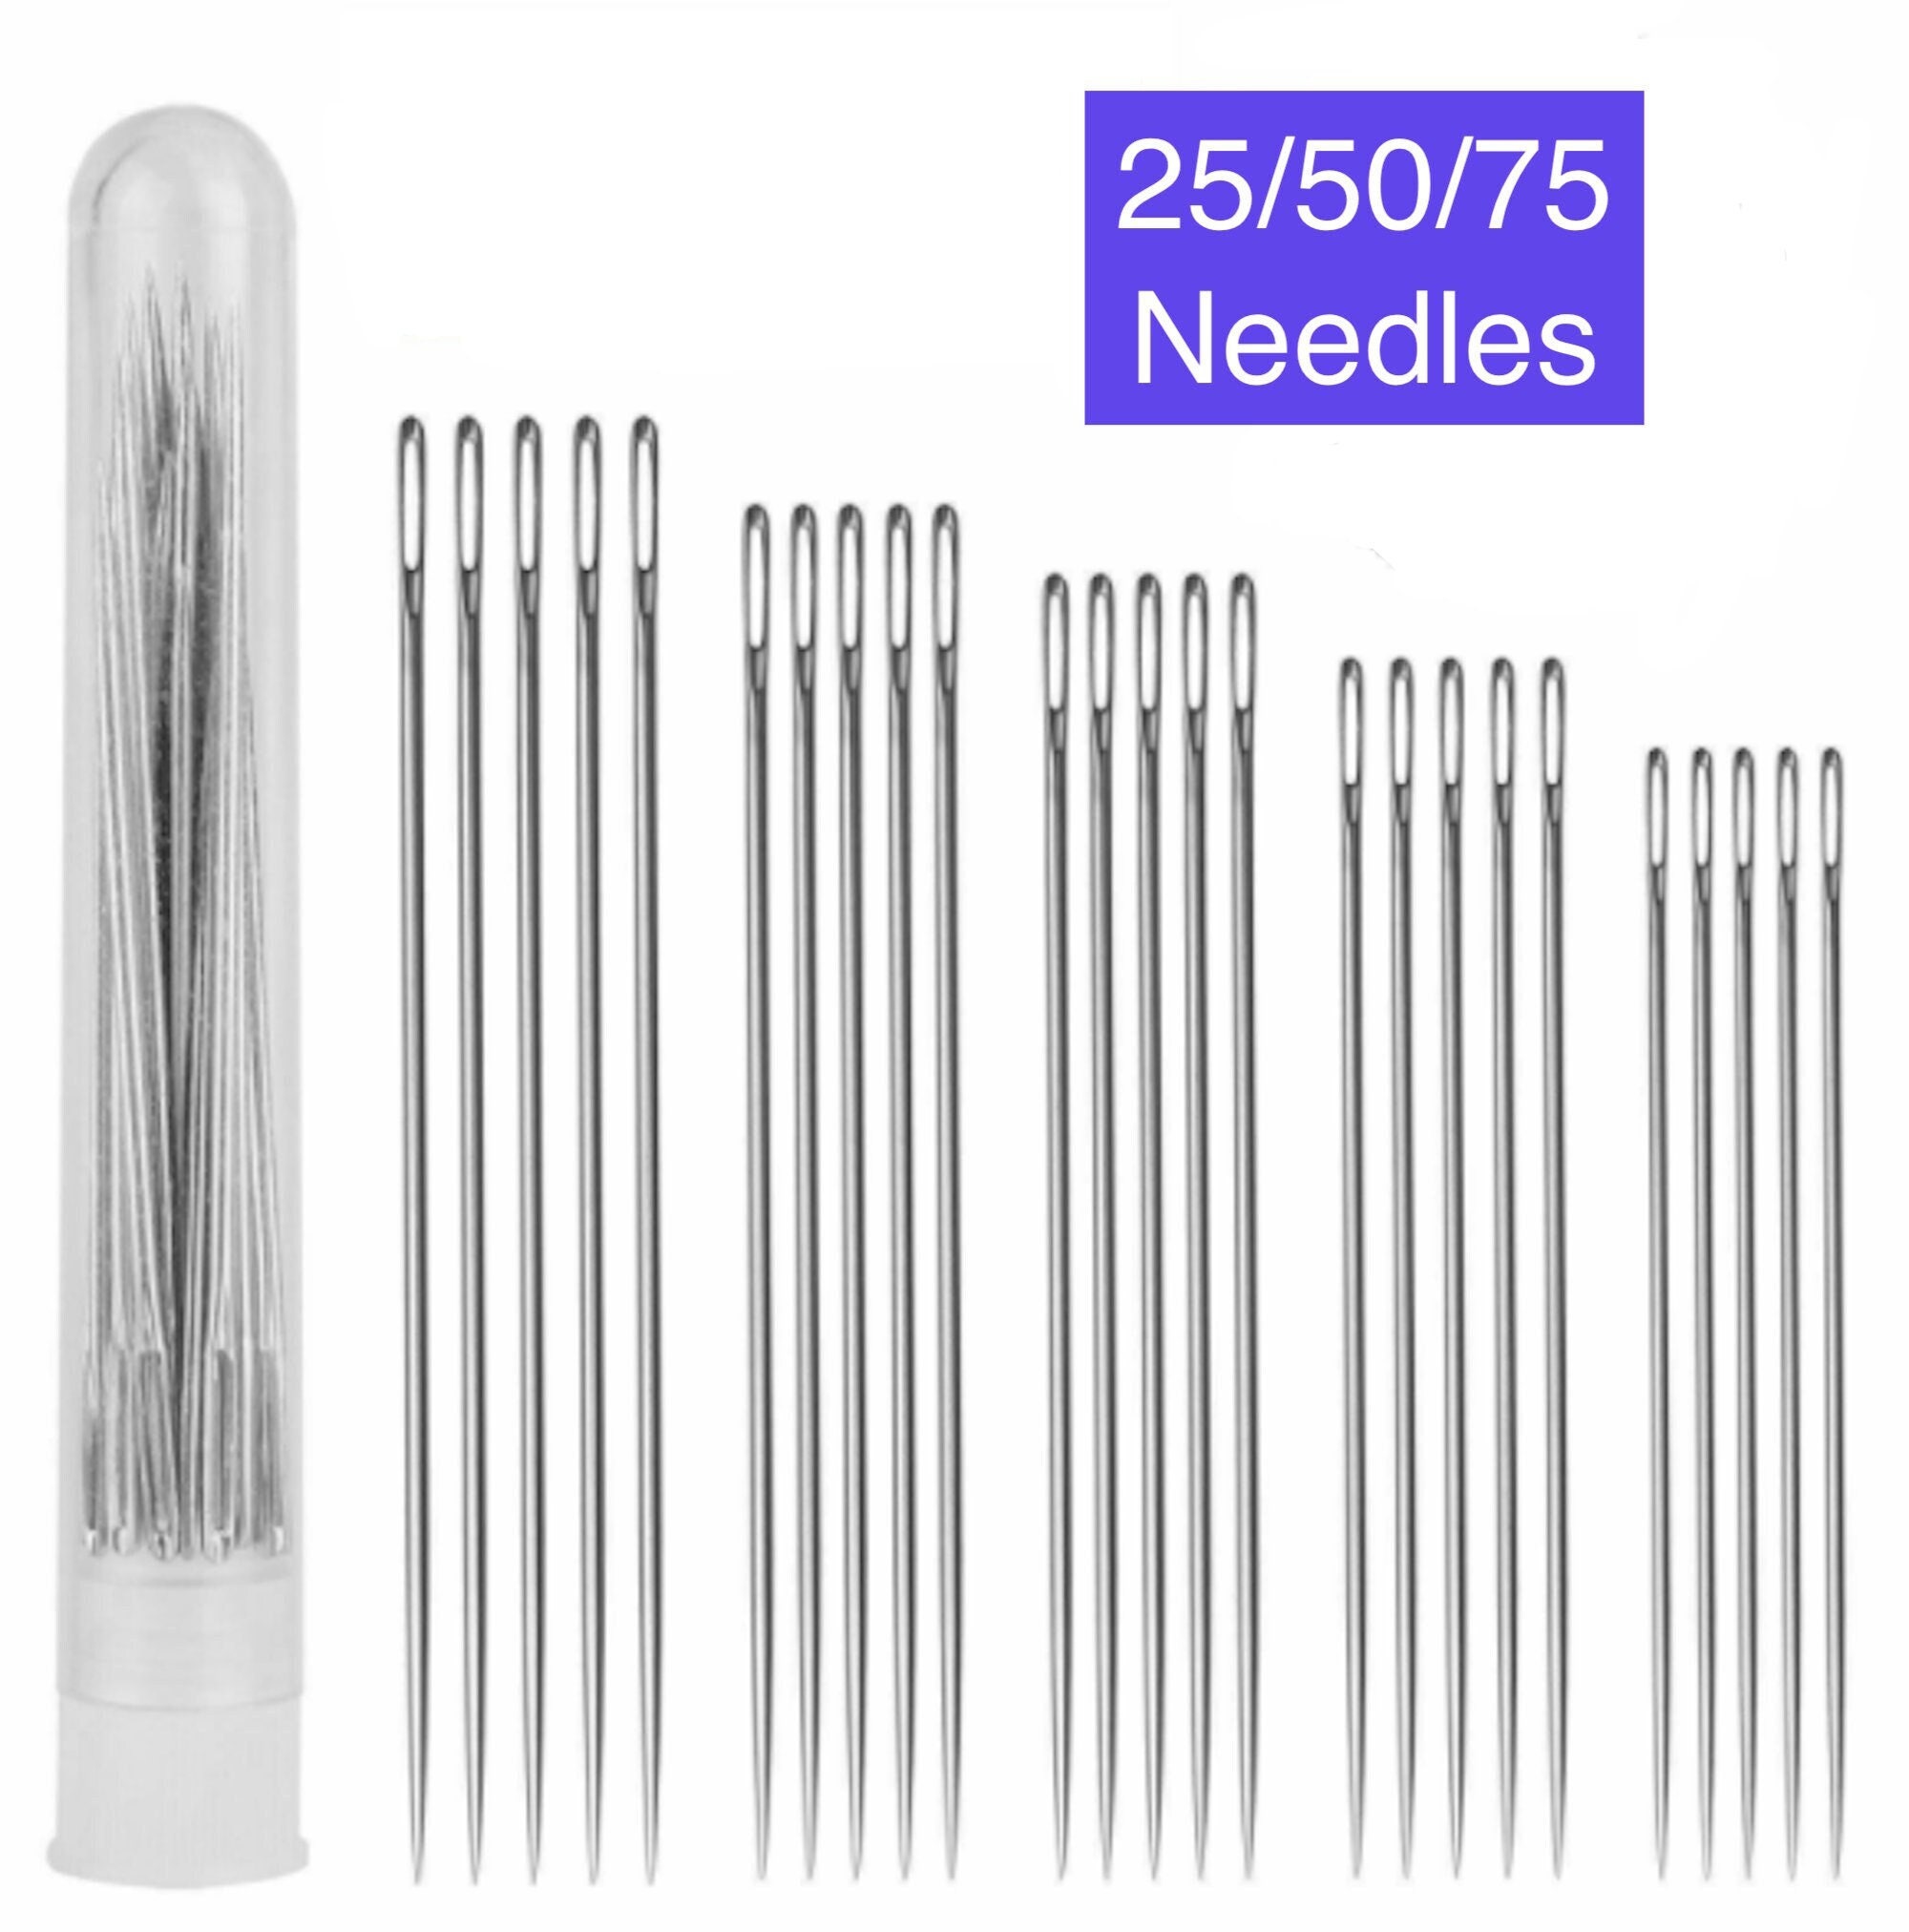 25 Large Eye Stitching Needles - 5 Sizes Big Eye Hand Sewing Needles in  Clear Storage Tube